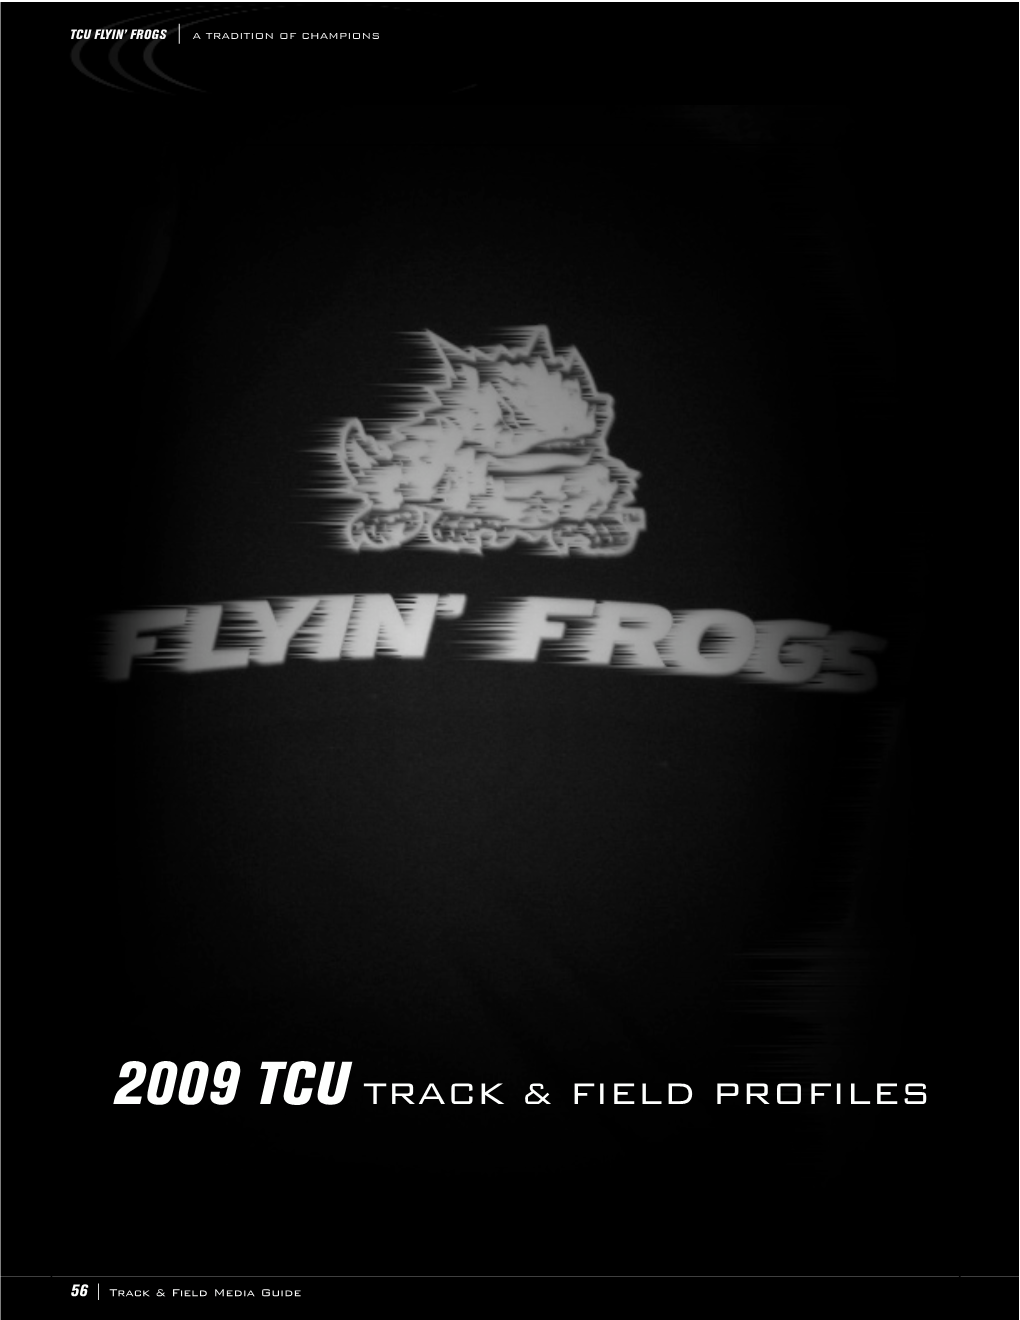 2009 TCU Track and Field Book.Qxd:0344 TCU Track and Field Book 3/6/09 2:04 PM Page 56